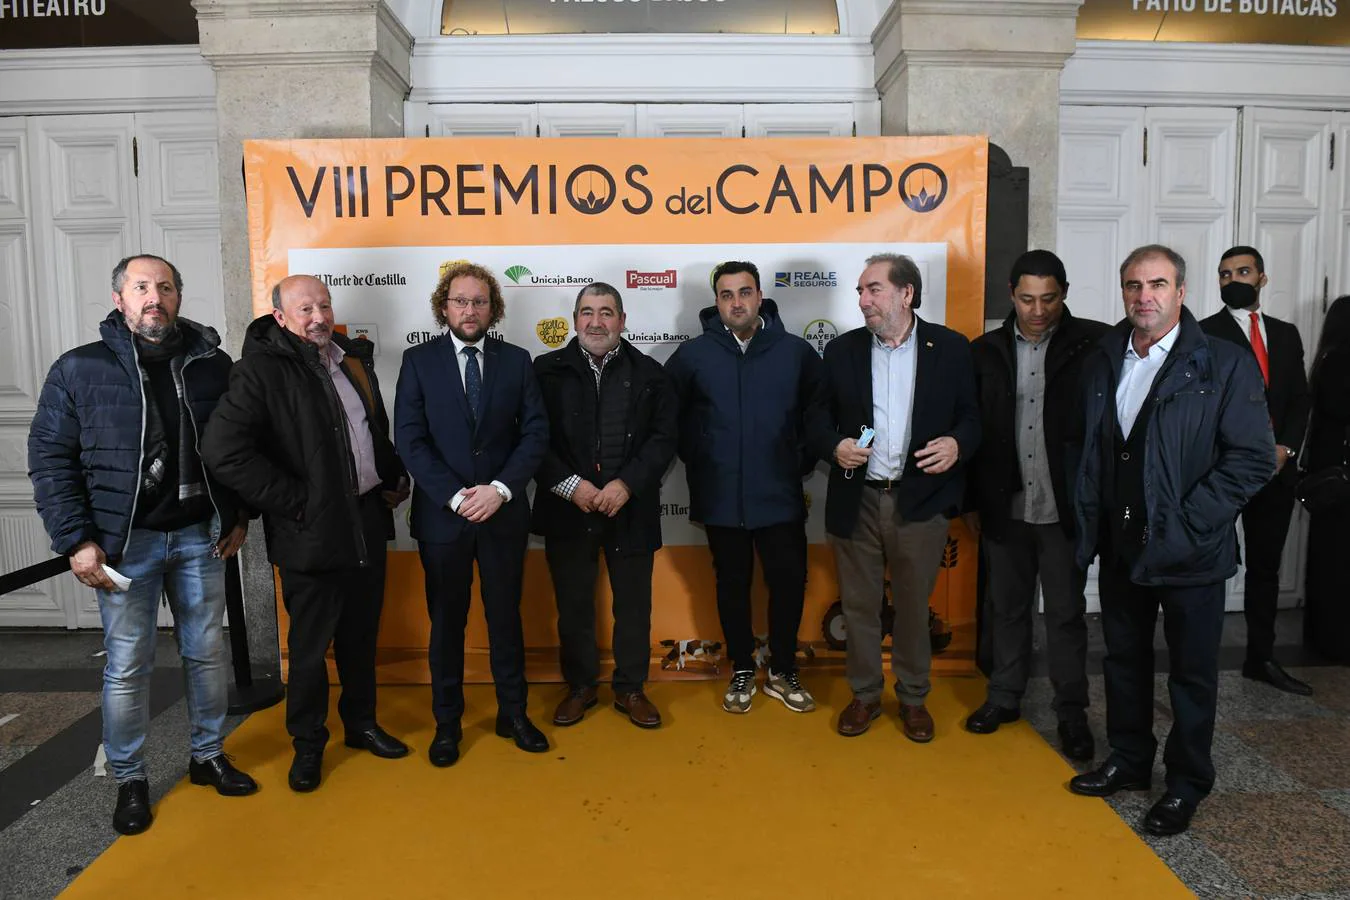 Invitados a la entrega de los VIII Premios del Campo de El Norte de Castilla (1/2)